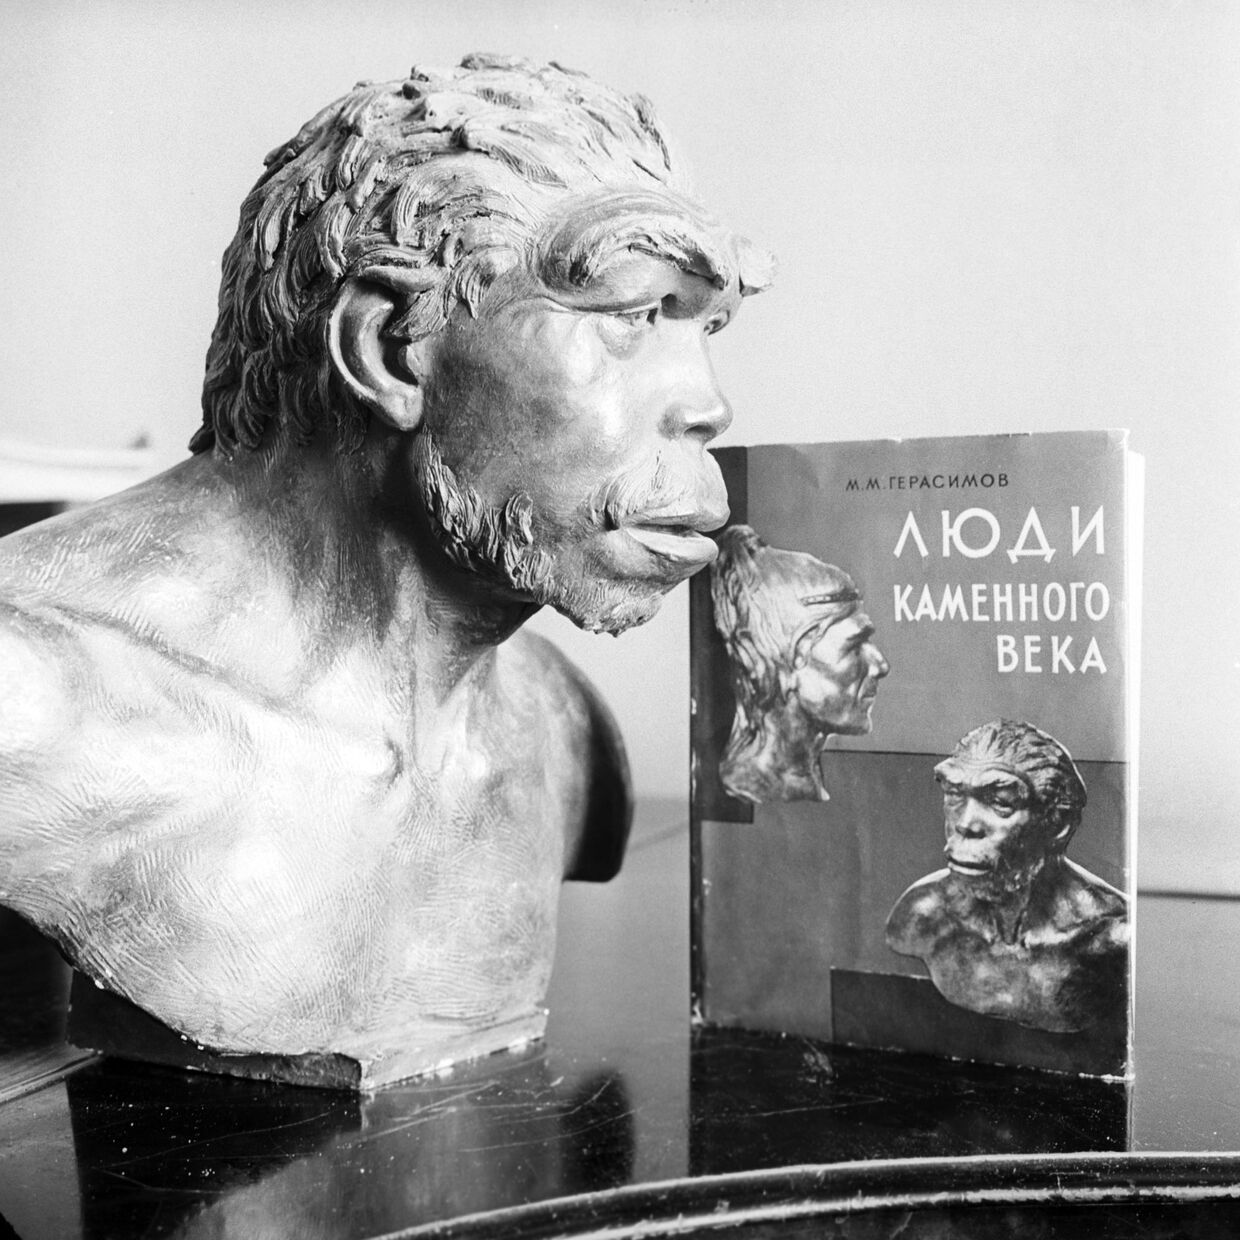 Скульптурный портрет неандертальца, который жил на территории Франции